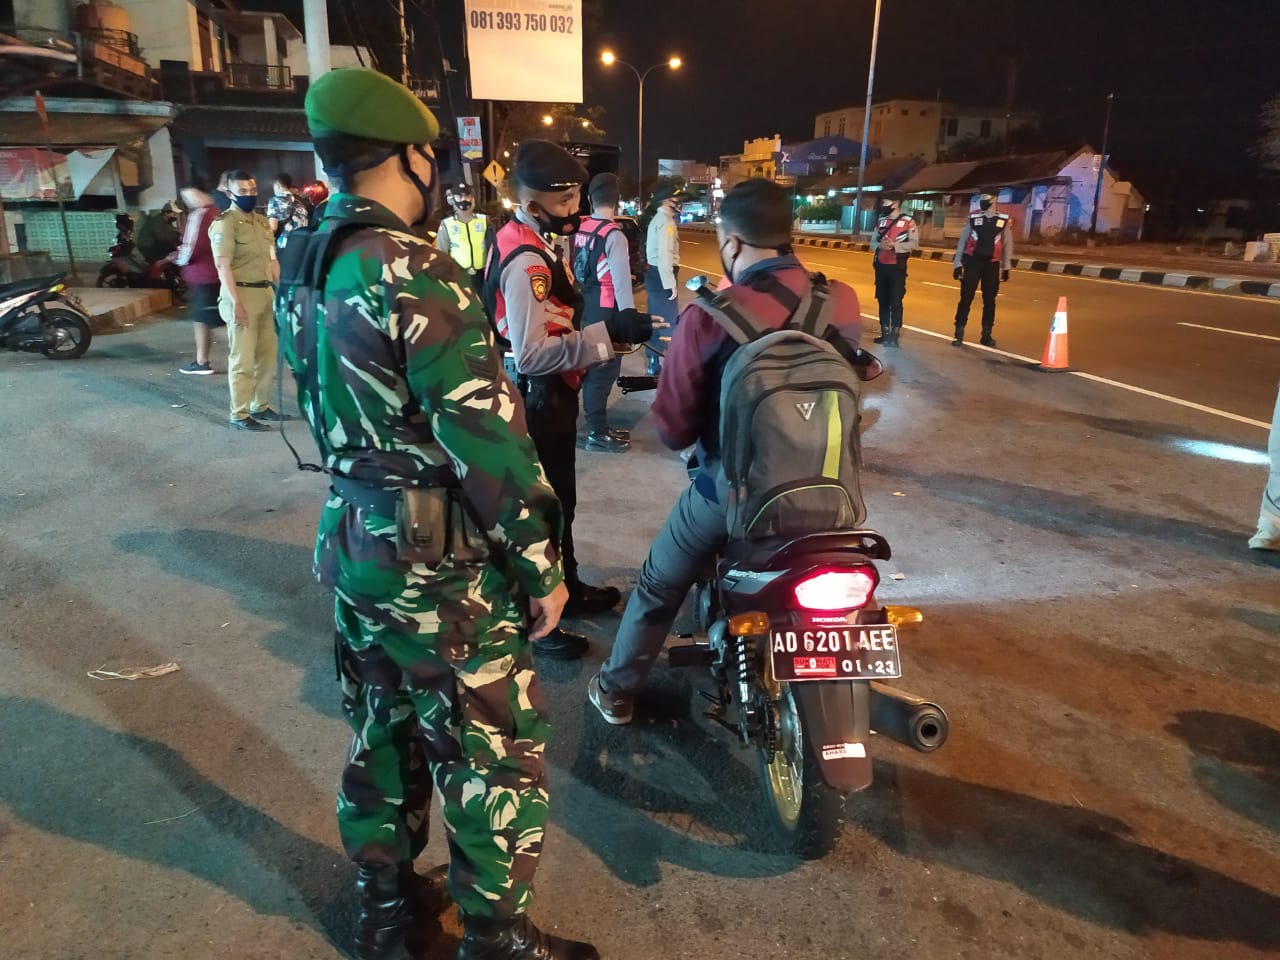 TNI Polri Juga Tertipkan Masker Di Malam Hari